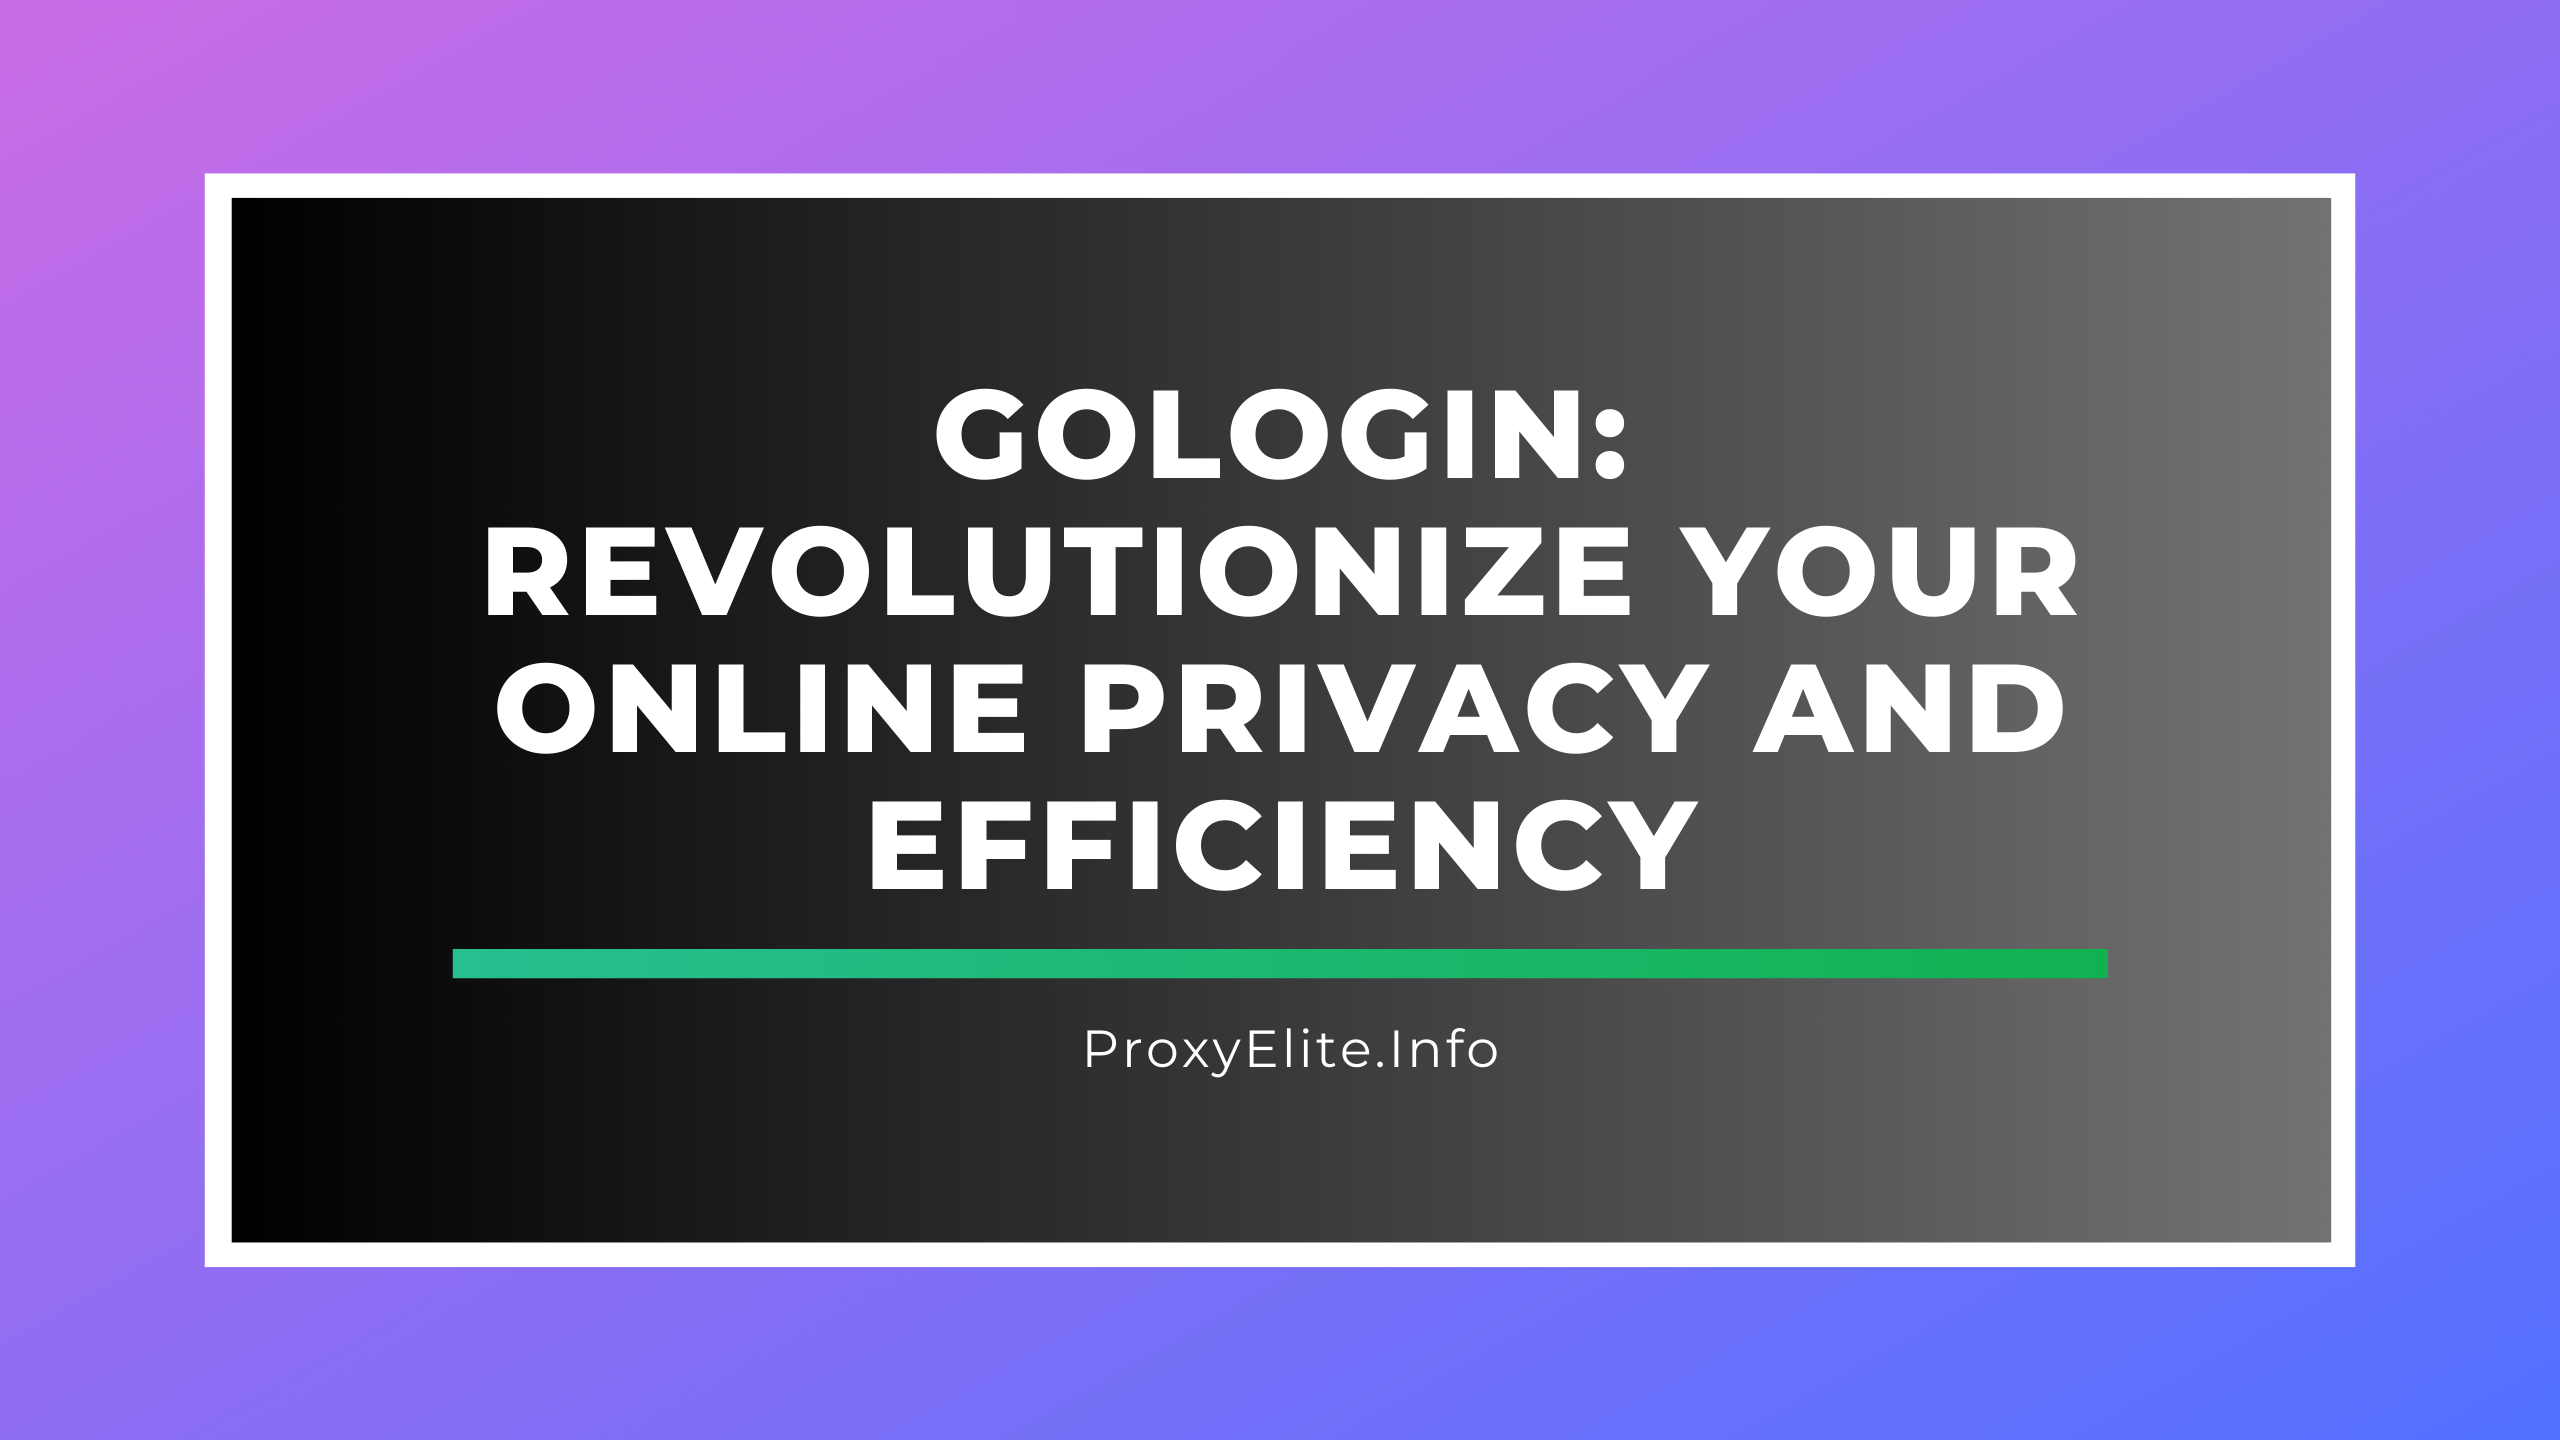 GoLogin: революционизируйте вашу конфиденциальность и эффективность в Интернете